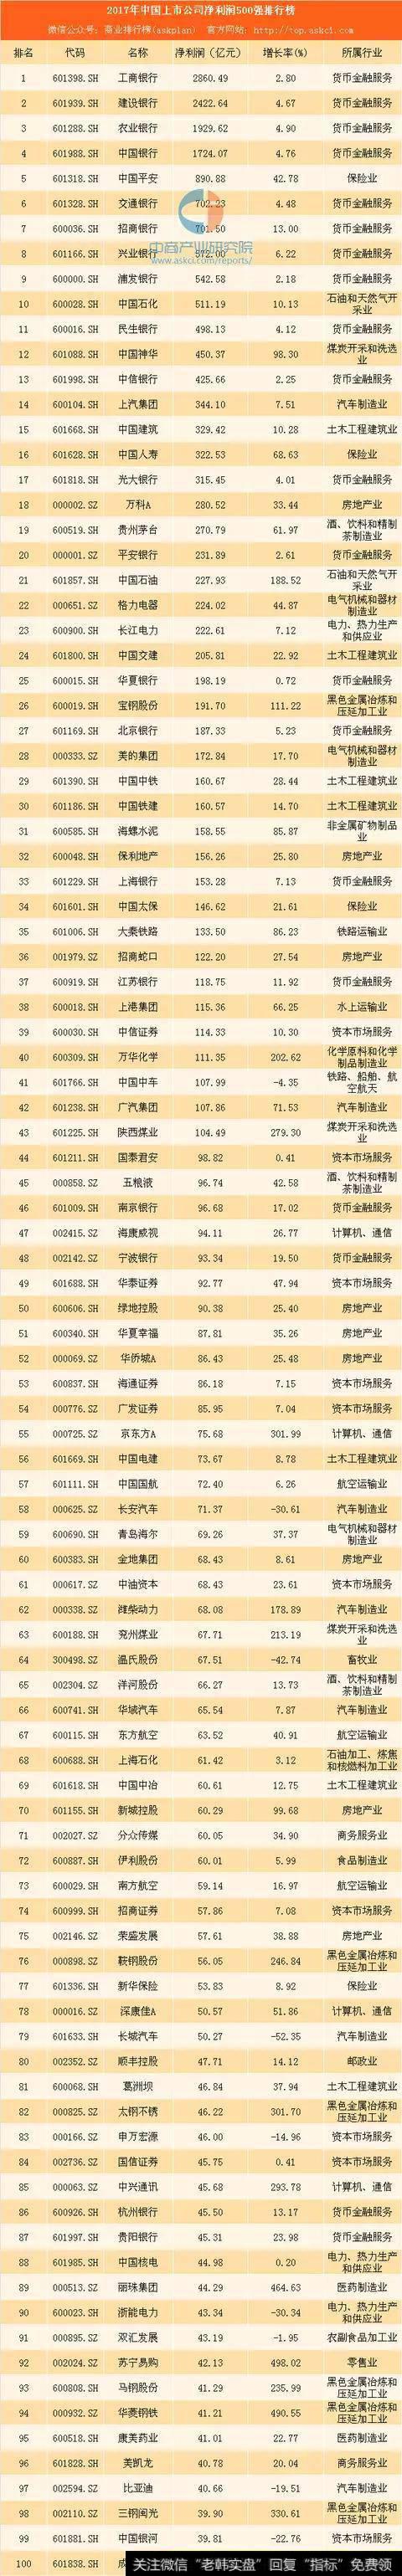 2017年<a href='/gushiyaowen/269953.html'>中国上市公司</a>利润排行榜100强